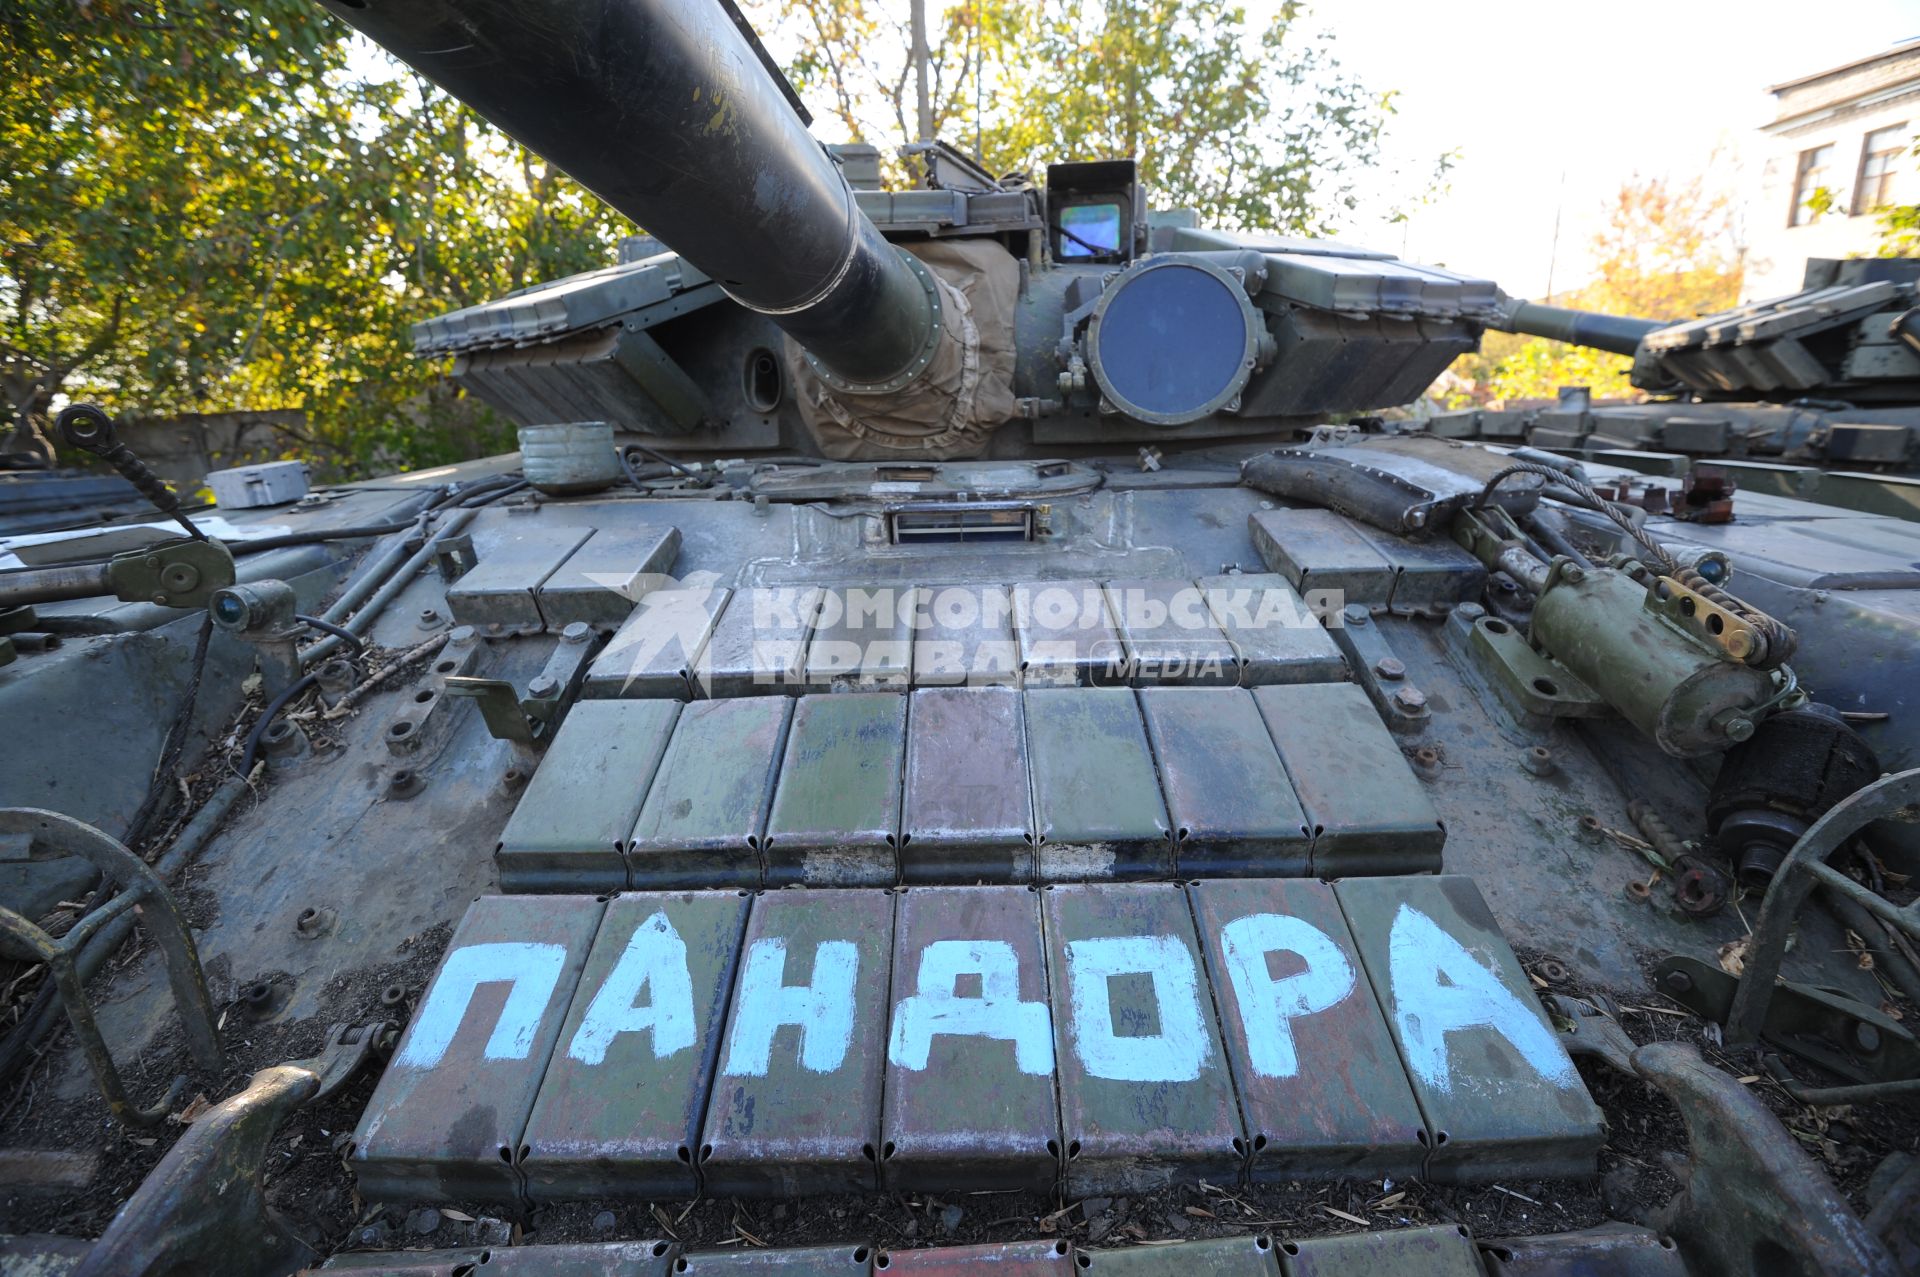 Одна из ремонтных баз Донецкой народной республики (ДНР), где пленные помогают ремонтировать военную технику, подбитую и брошенную украинскими войсками. На снимке: надпись на активной броне `Пандора`.